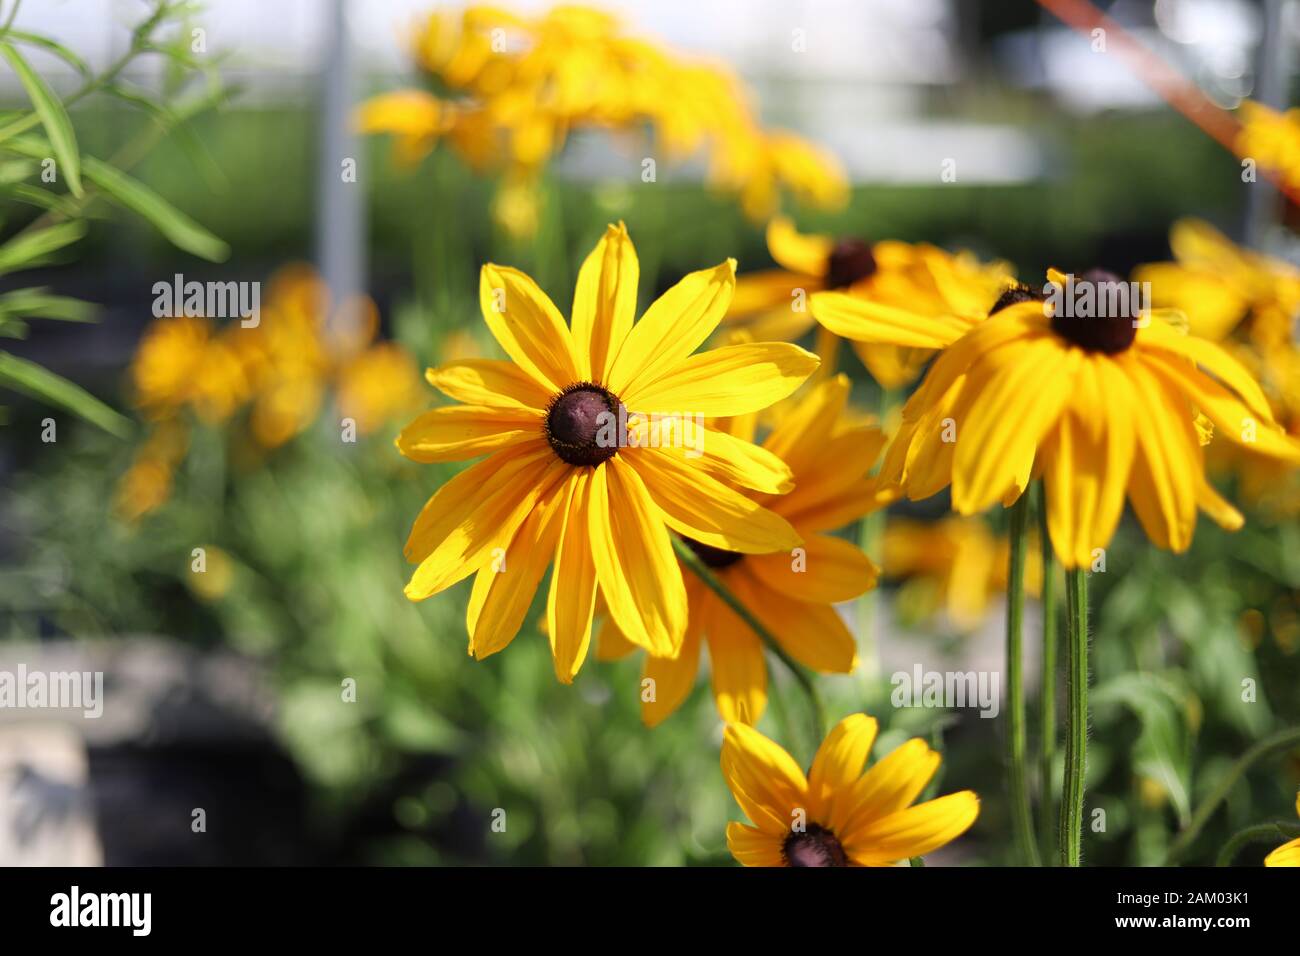 Black Eyed Susan, fiori gialli luminosi con centro marrone scuro Foto Stock